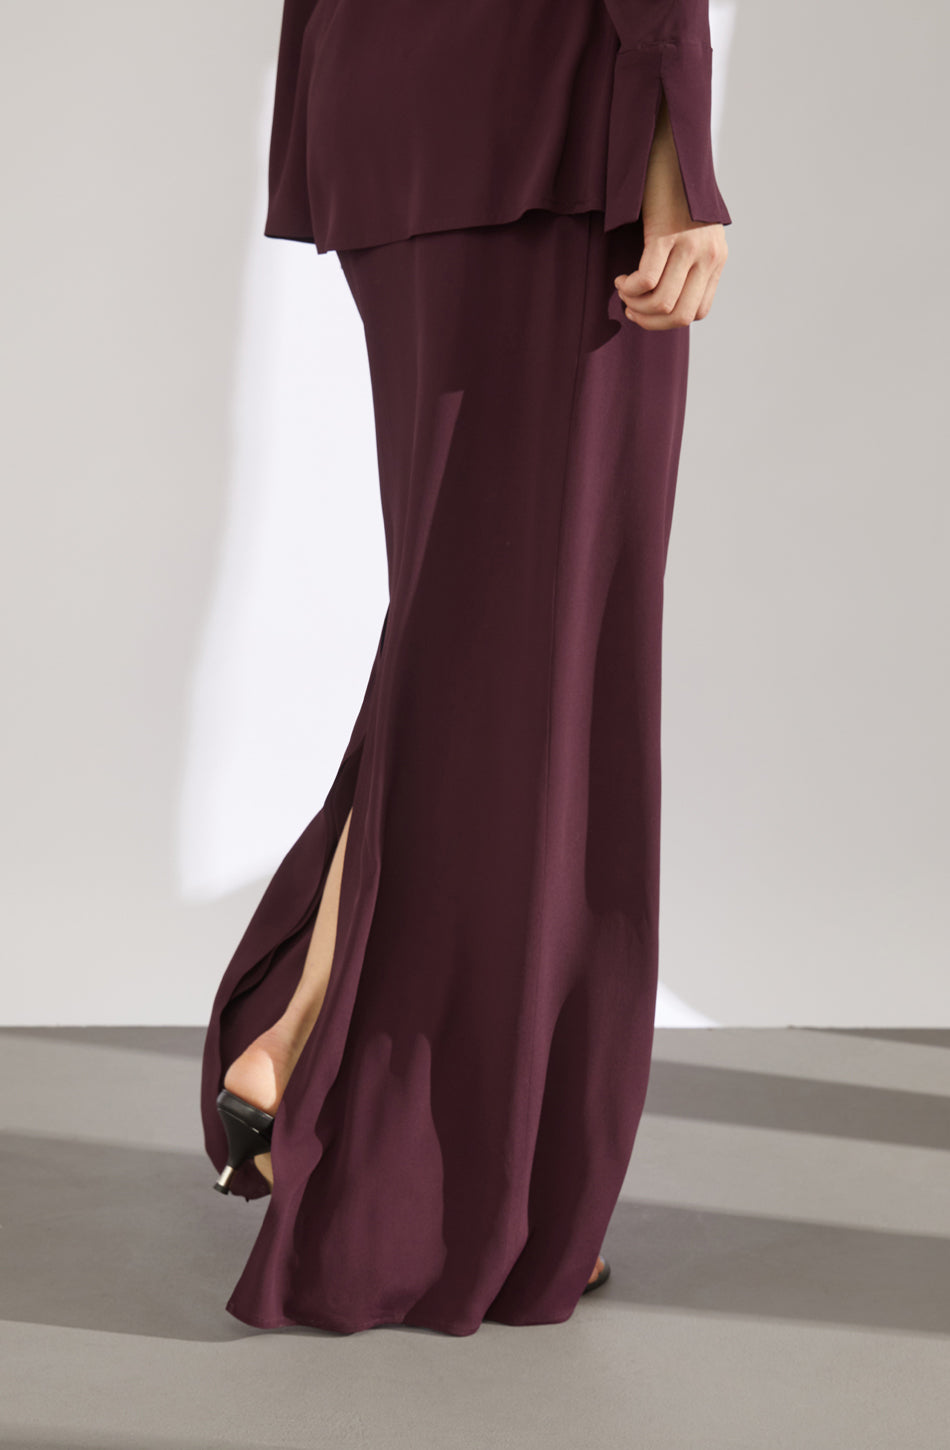 Theodora dark purple skirt